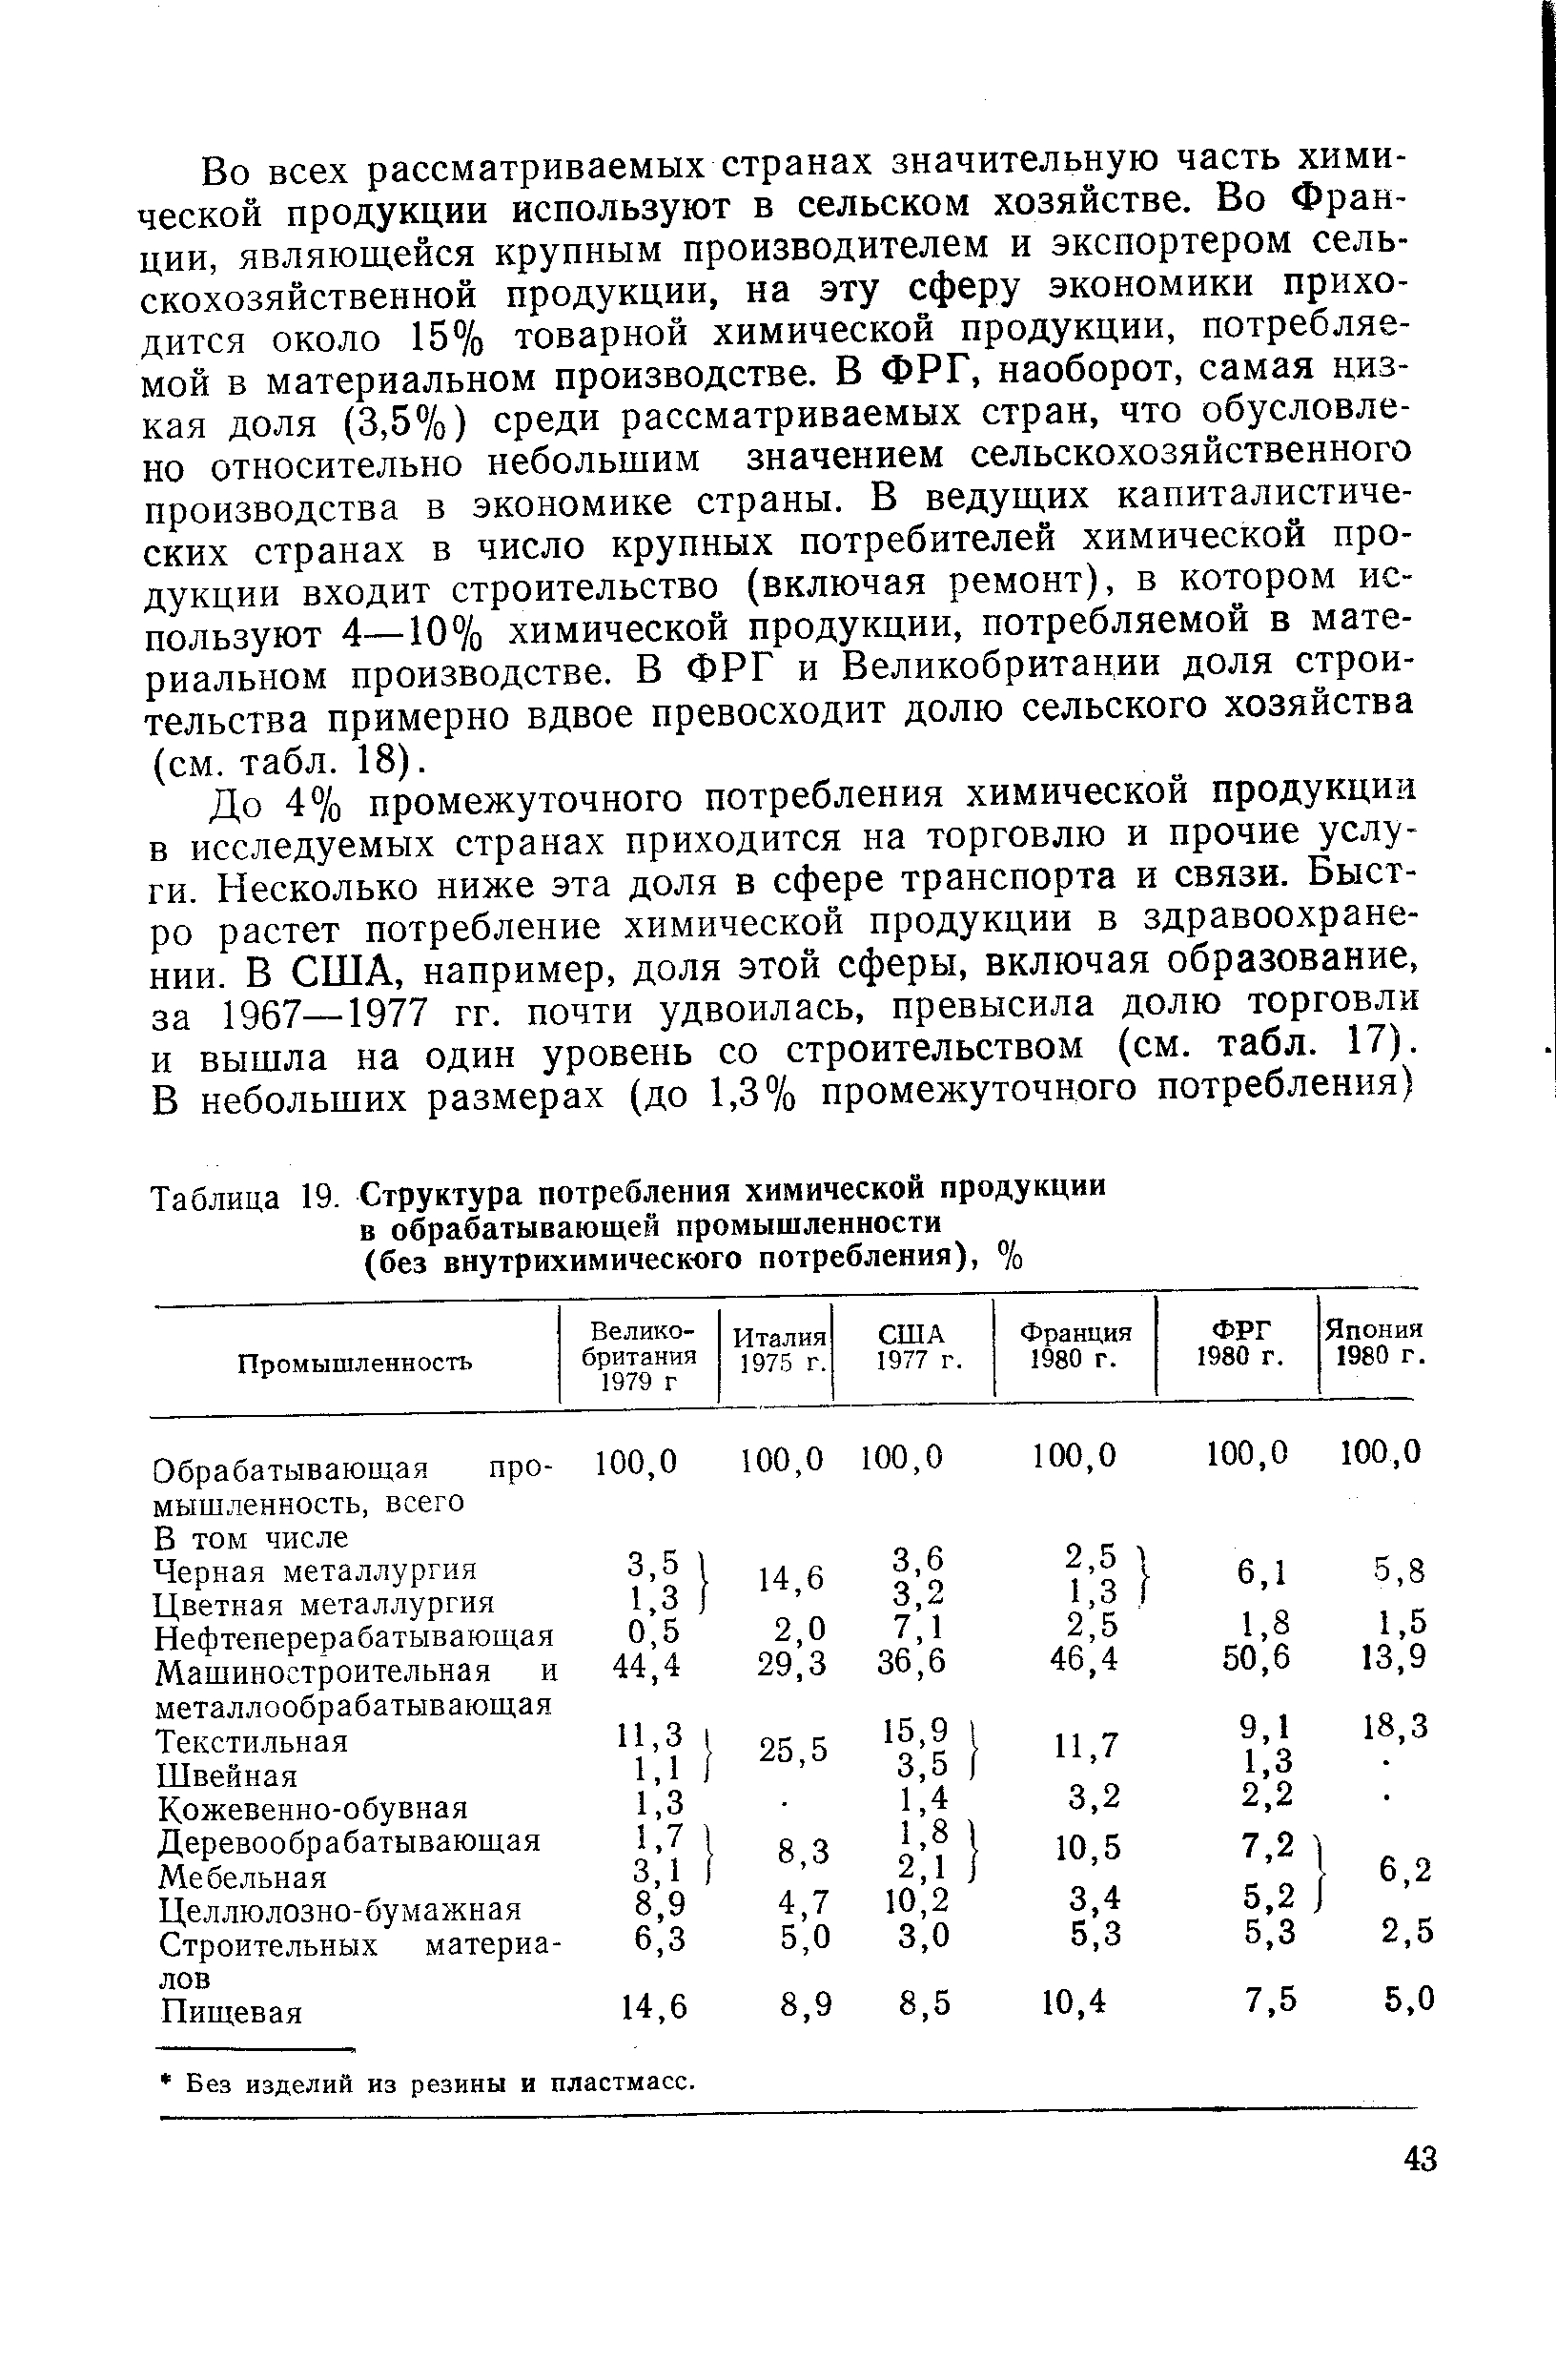 Таблица 19. Структура потребления химической продукции в обрабатывающей промышленности (без внутрихимического потребления), %
